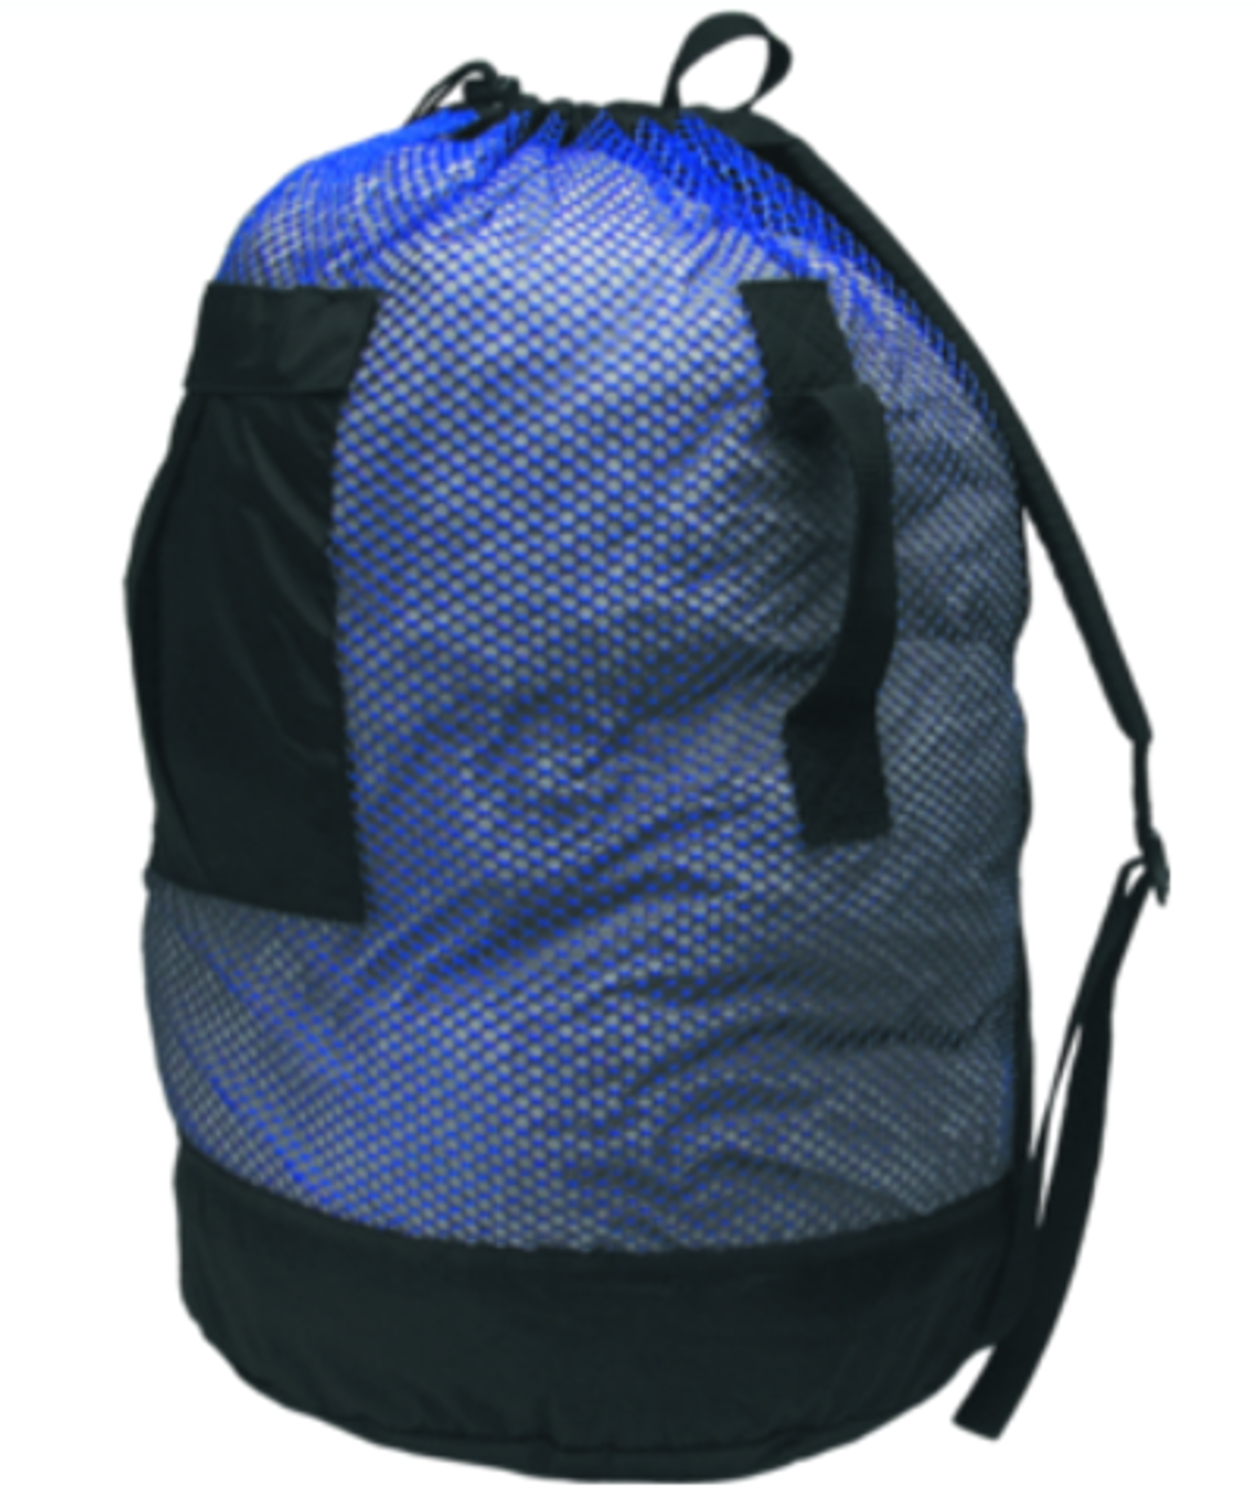 Innovative Mesh Backpack Dive Bag